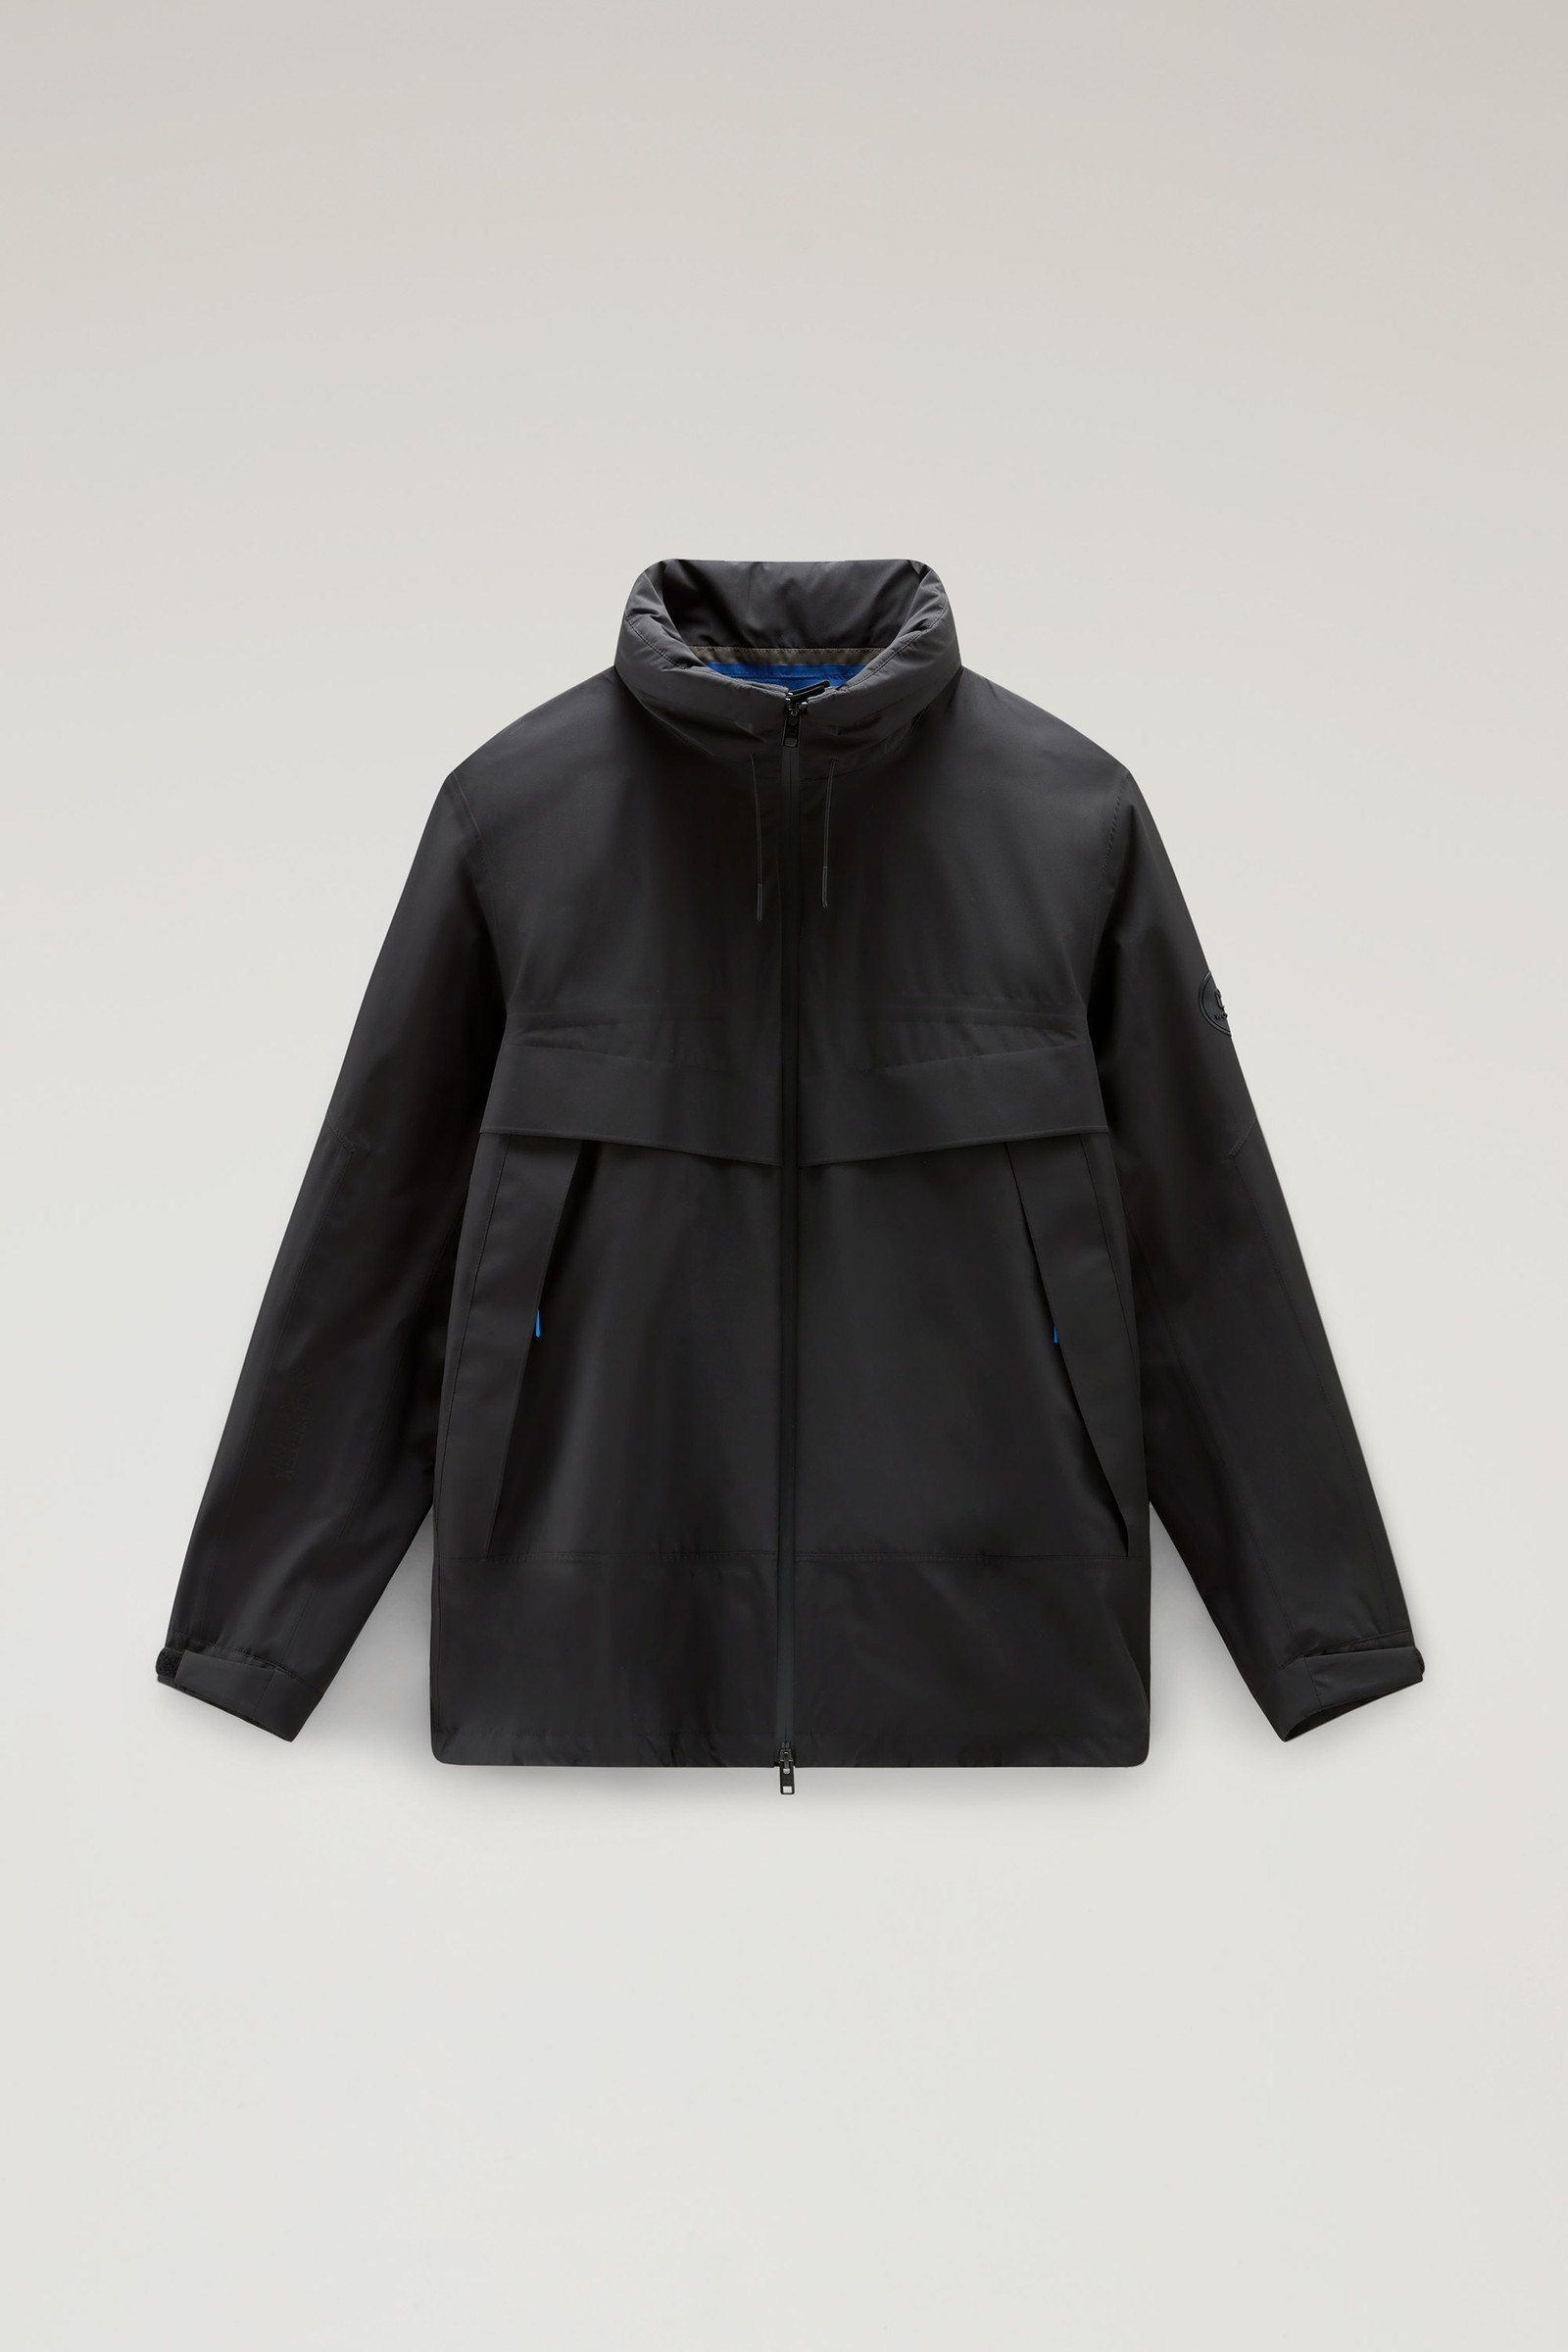 High Tech Waterproof Jacket in GORE-TEX INFINIUM with Resealable Hood - Men  - Black